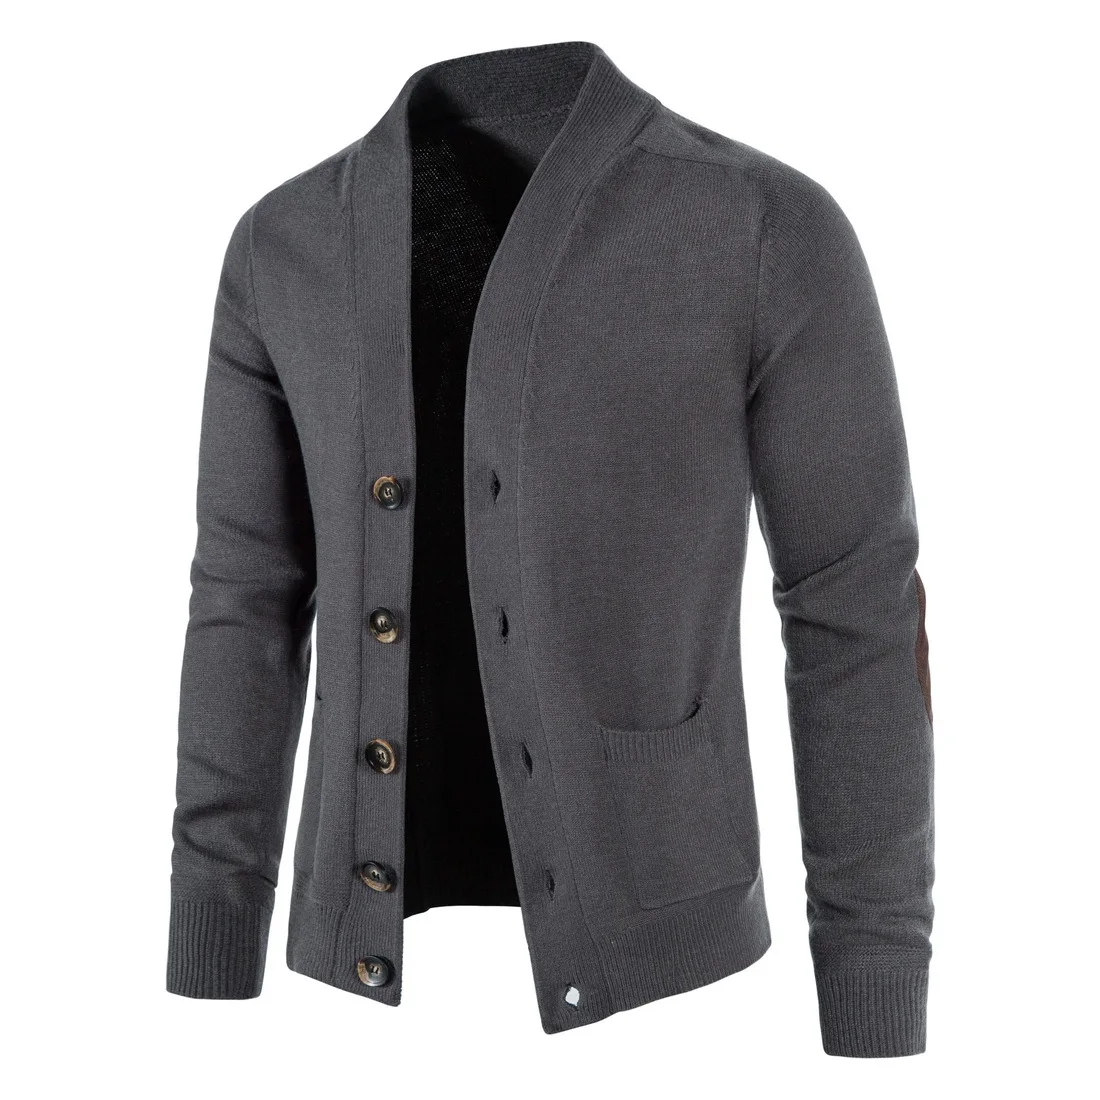 

Мужской кардиган свитер, куртки, пальто, модный вязаный свитер, теплый толстый свитер, мужские повседневные вязаные куртки, пальто в стиле п...